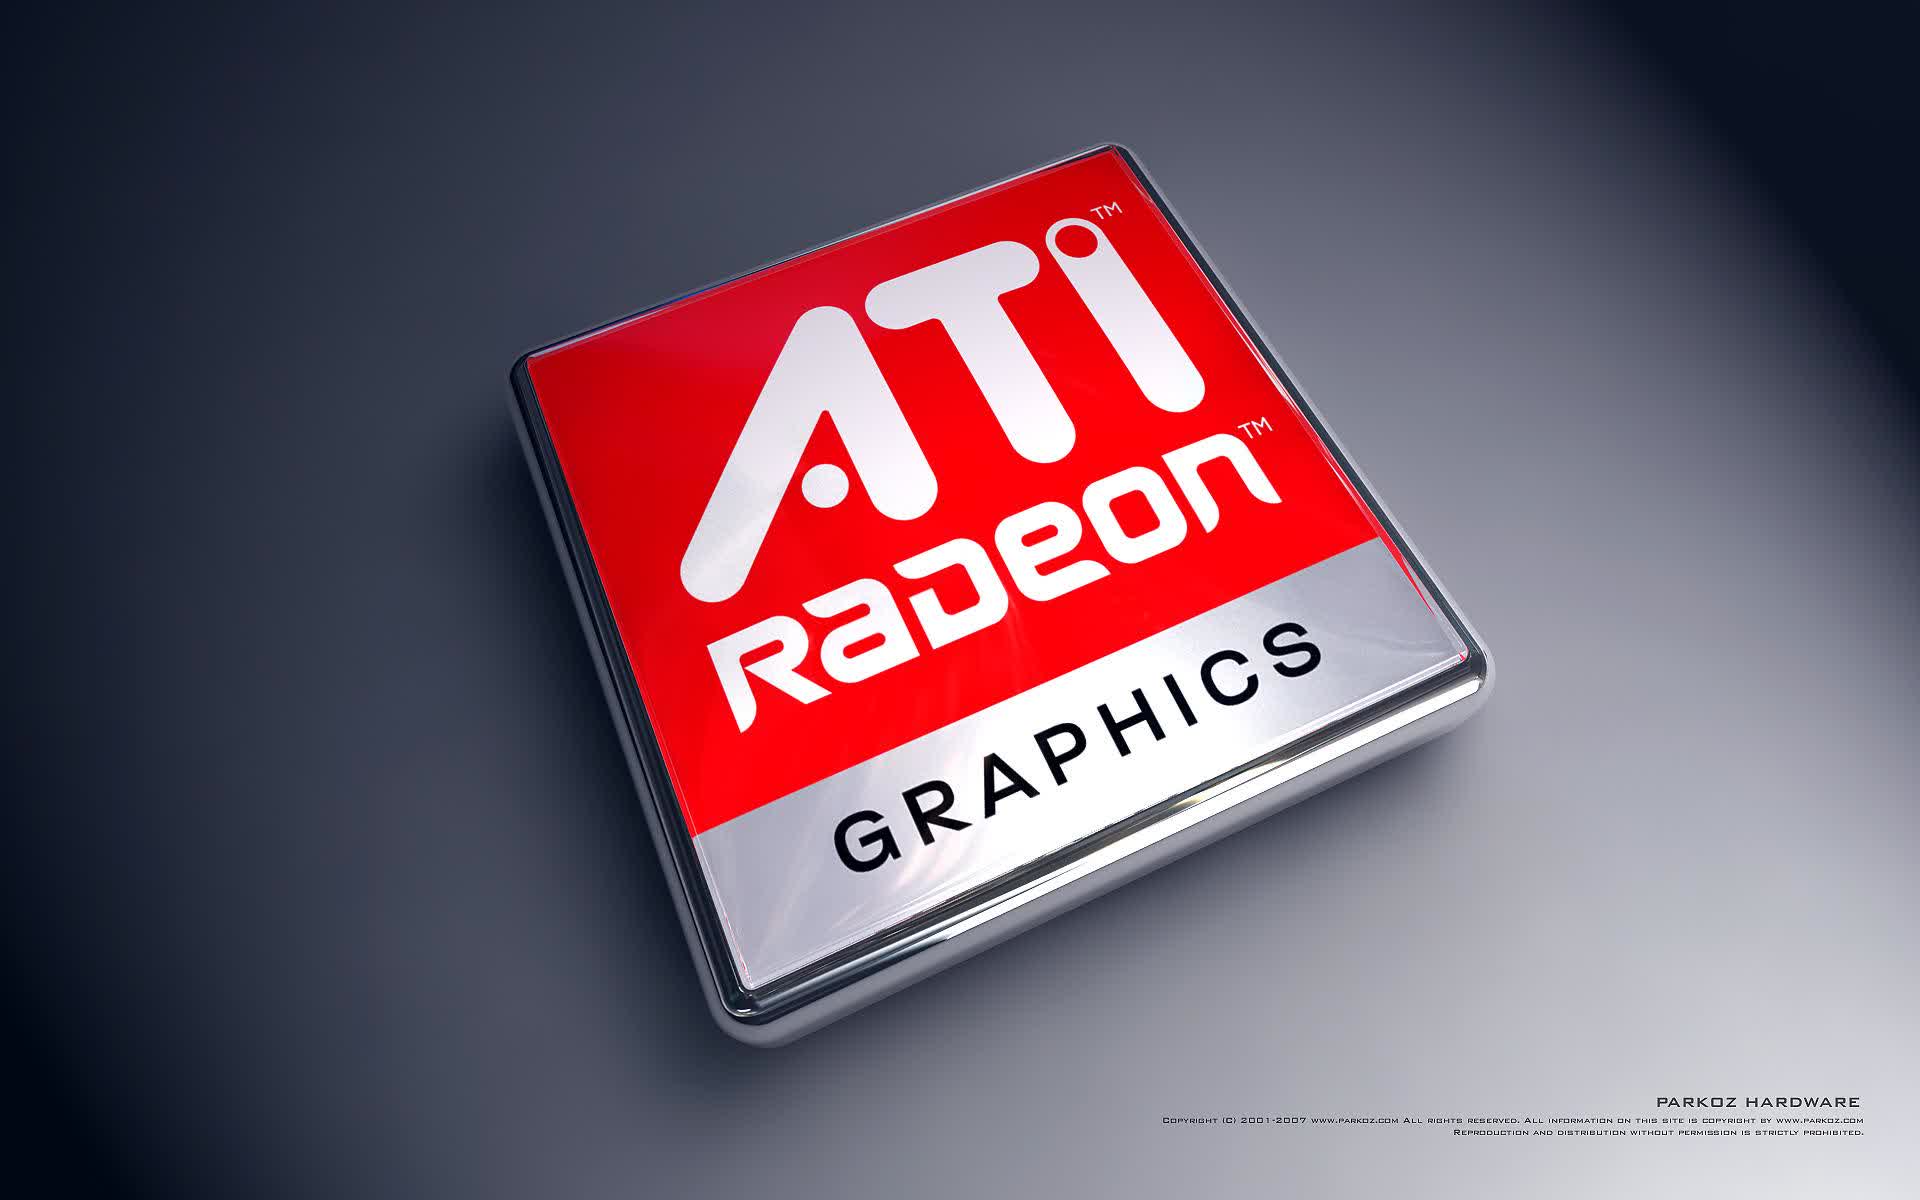 AMD & ATI merger: A reality